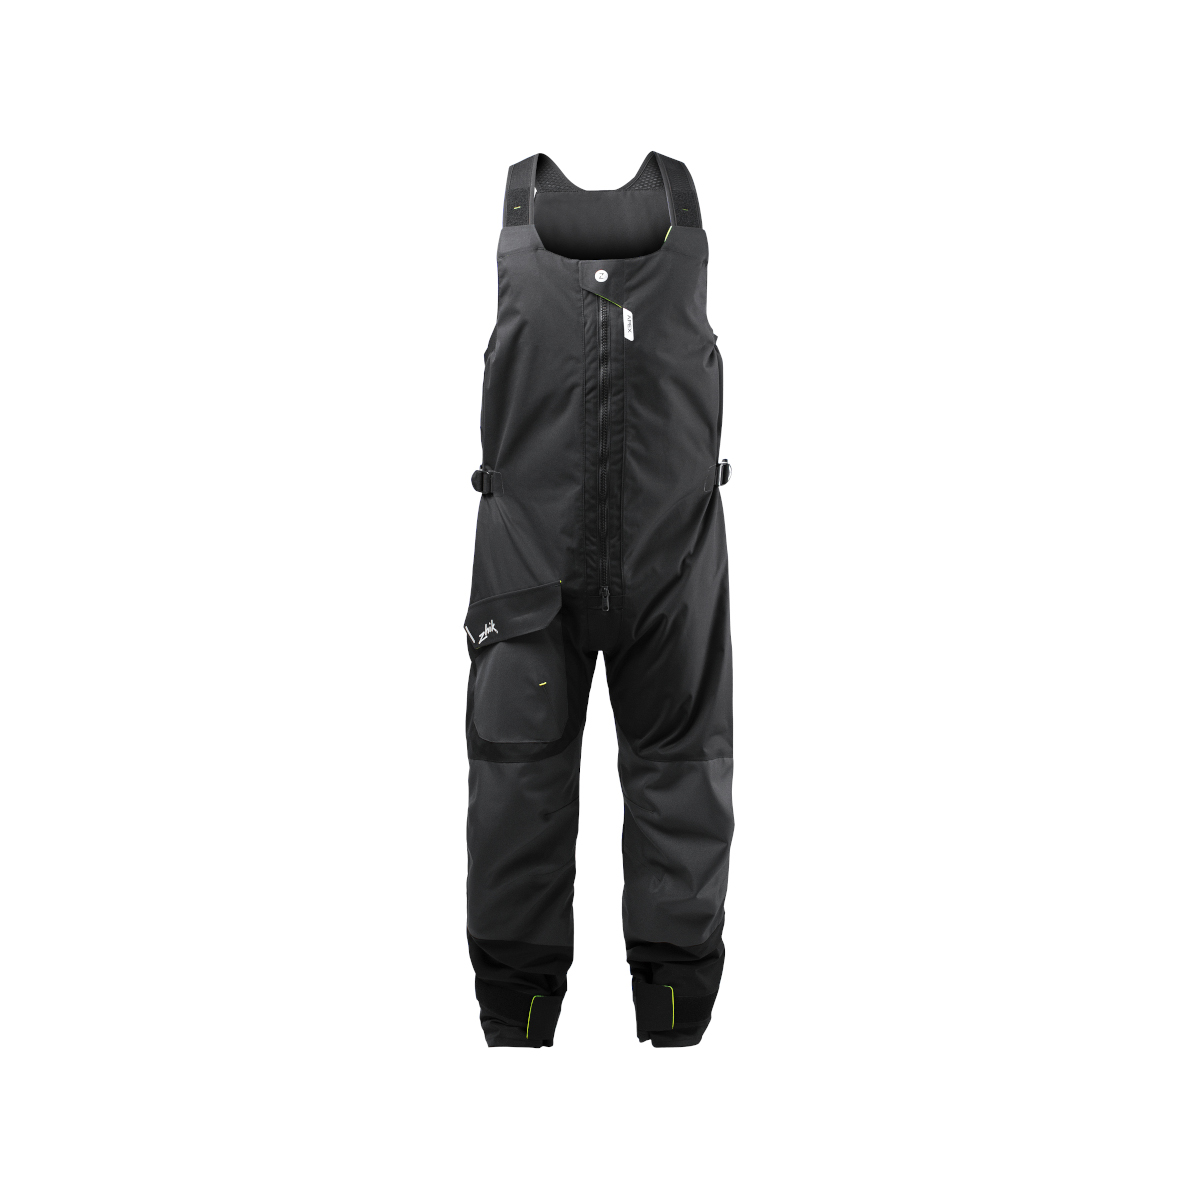 Zhik OFS700 pantalon de voile Coastal unisexe gris foncé, taille XL